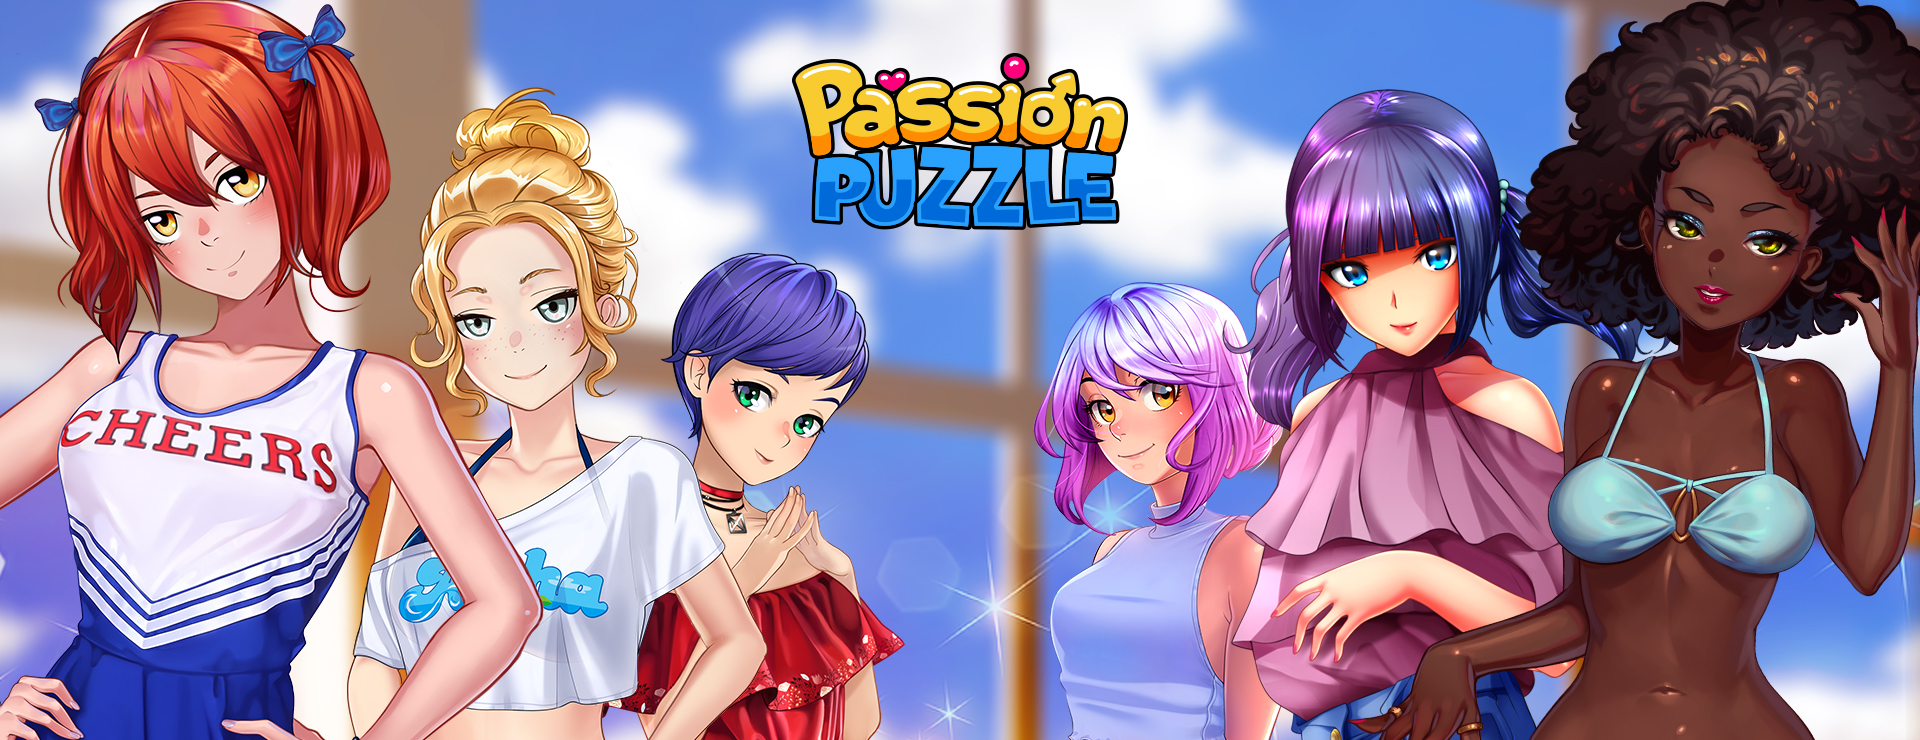 [18+ EN] Passion Puzzle (v1.16.5) (MOD) – Hẹn Hò Và Xếp Hình Với Mấy Em Gái Xinh Đẹp | Android, PC